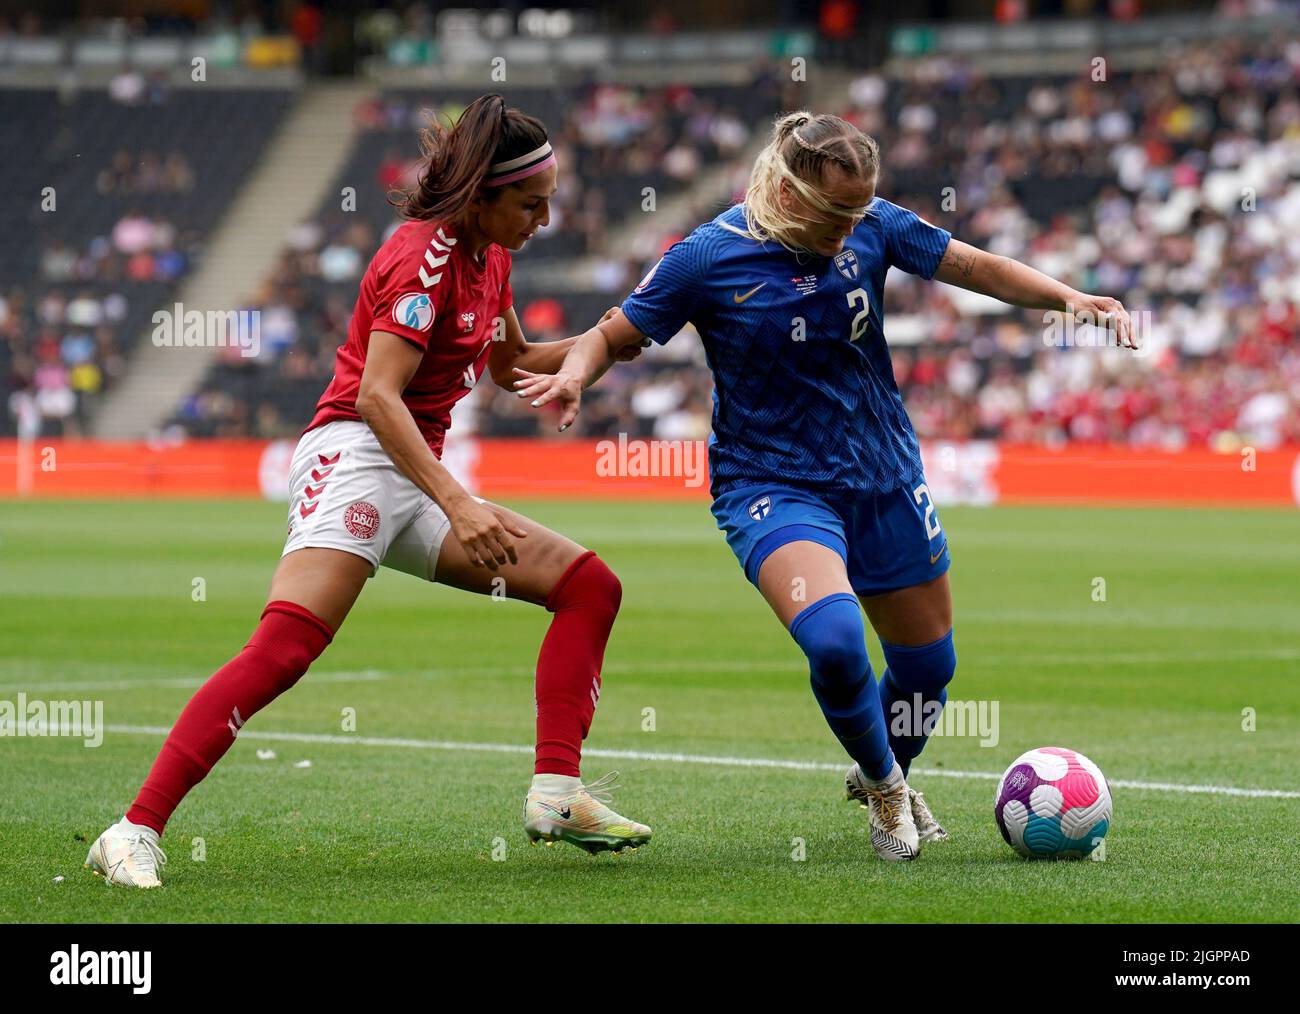 Die finnische Elli Pikkujamsa kämpft mit der dänischen Nadia Nadim während des UEFA Women's Euro 2022 Gruppe B-Spiels im Stadium MK, Milton Keynes. Bilddatum: Dienstag, 12. Juli 2022. Stockfoto